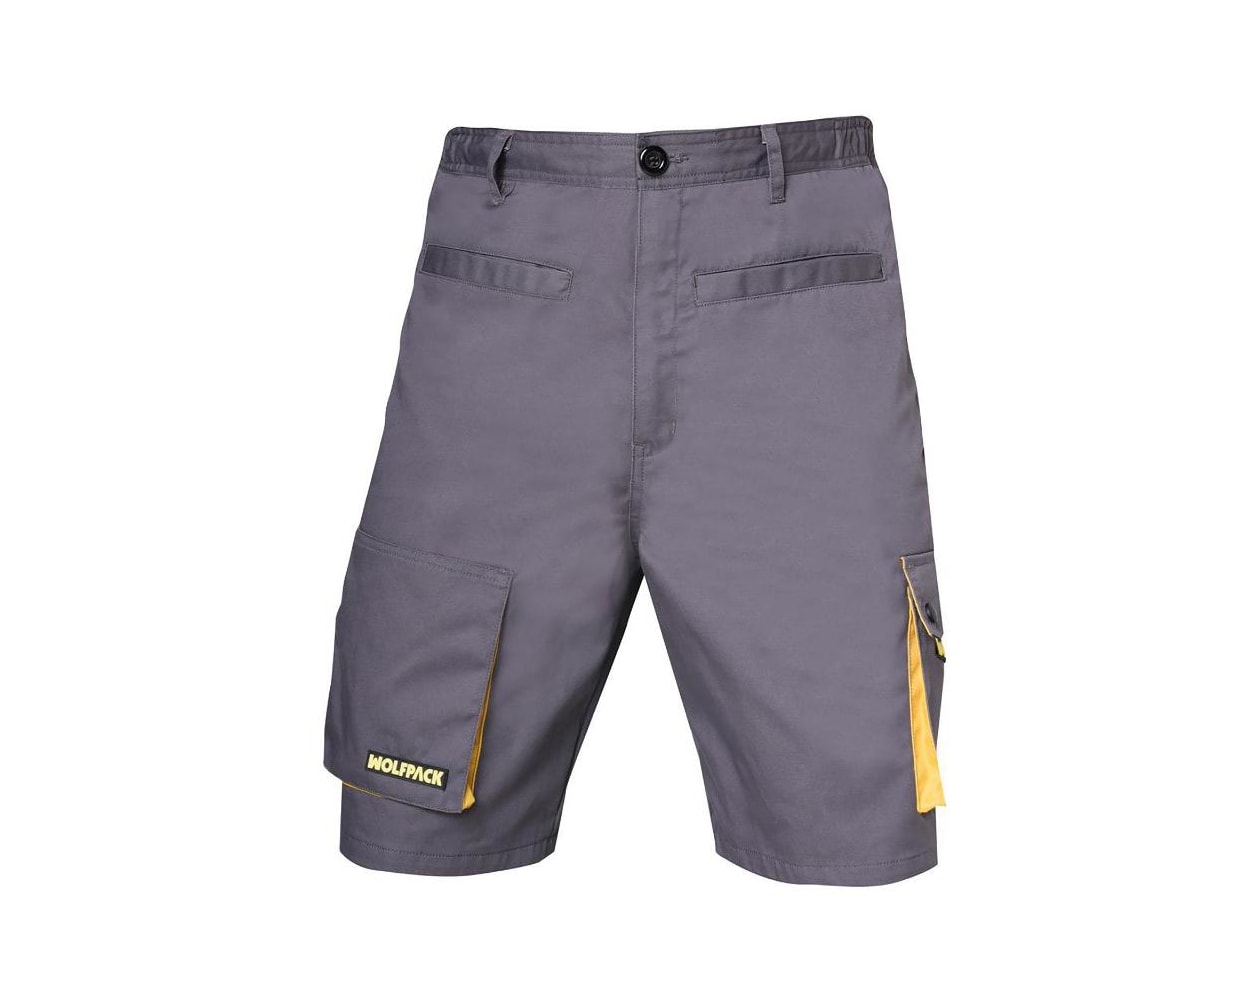 Pantalones cortos detrabajo, multibolsillos, resistentes, gris/amarillo  talla 38/40 s